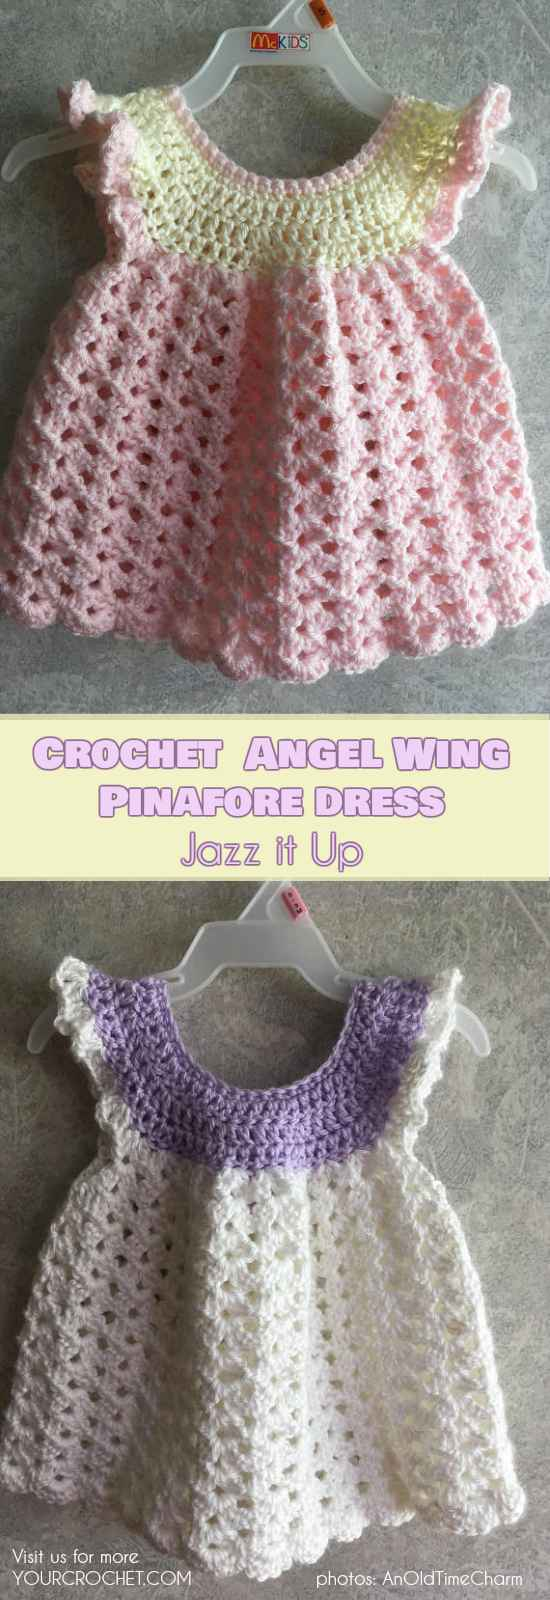 Wing Crochet Pattern How To Crochet Angel Wing Ba Dress Your Crochet